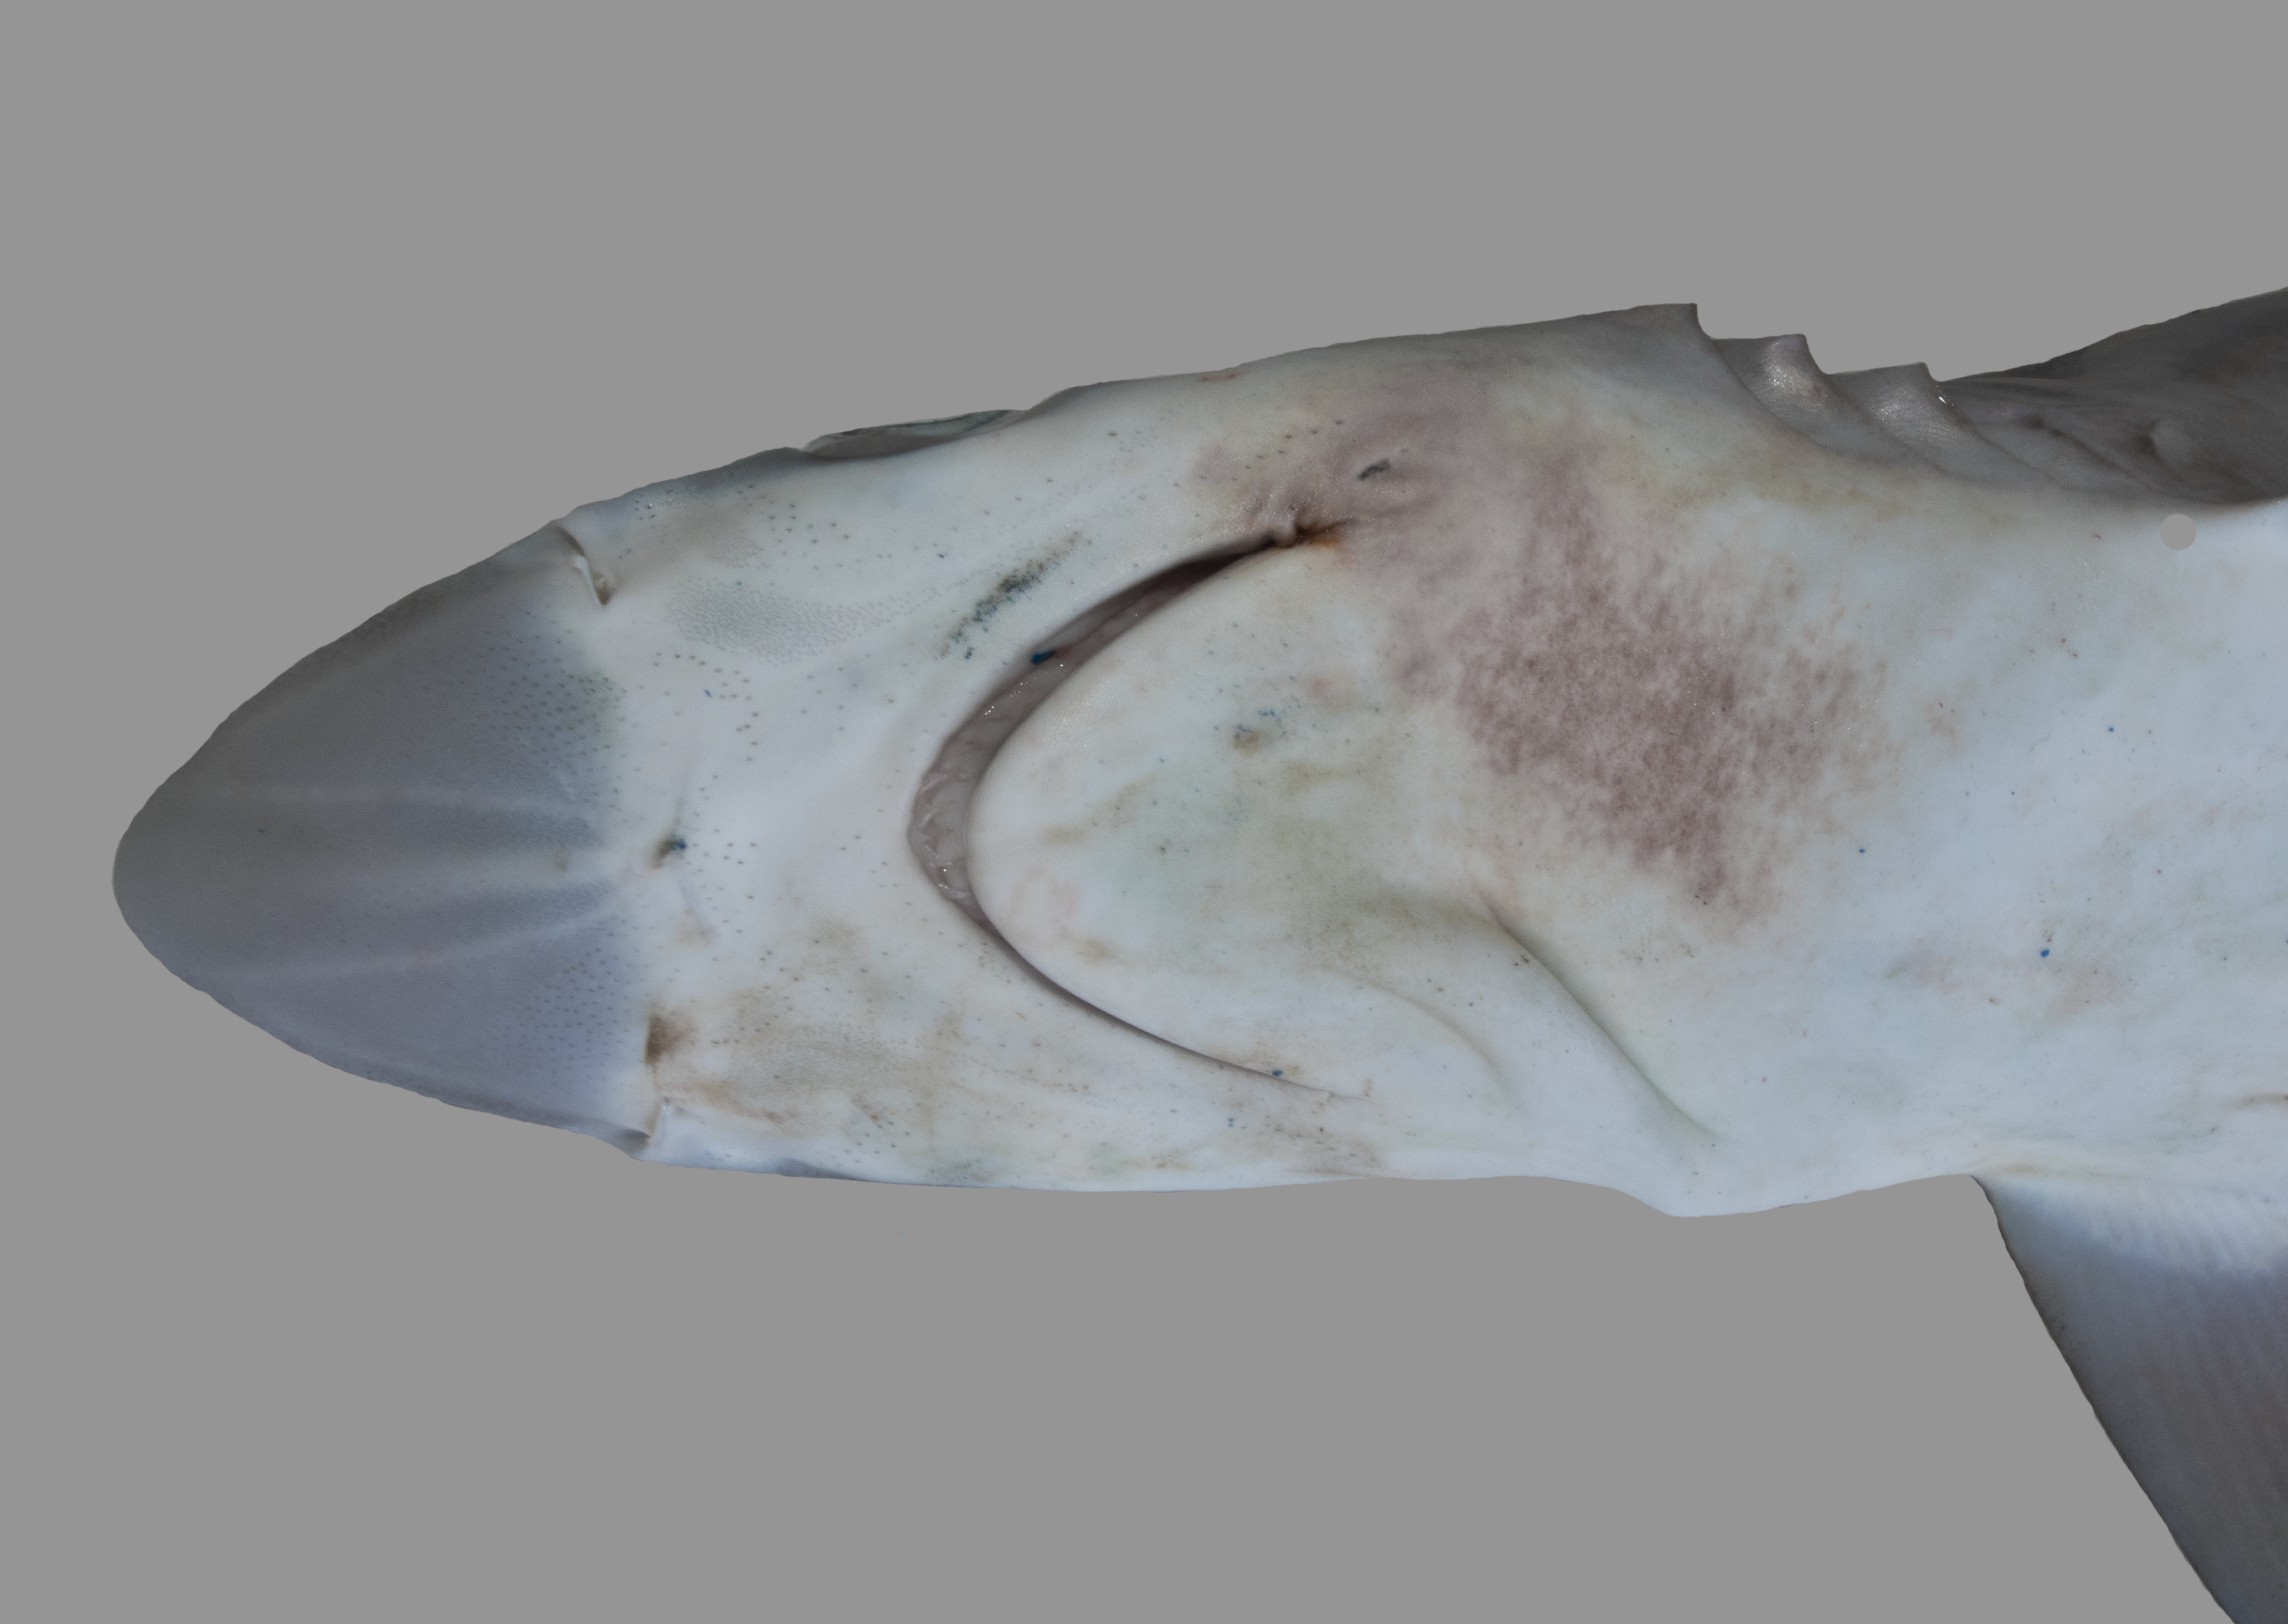 Loxodon macrorhinus, male, 82.5 cm TL, underside of snout, Saudi Arabia: Al Wajh; S.V. Bogorodsky